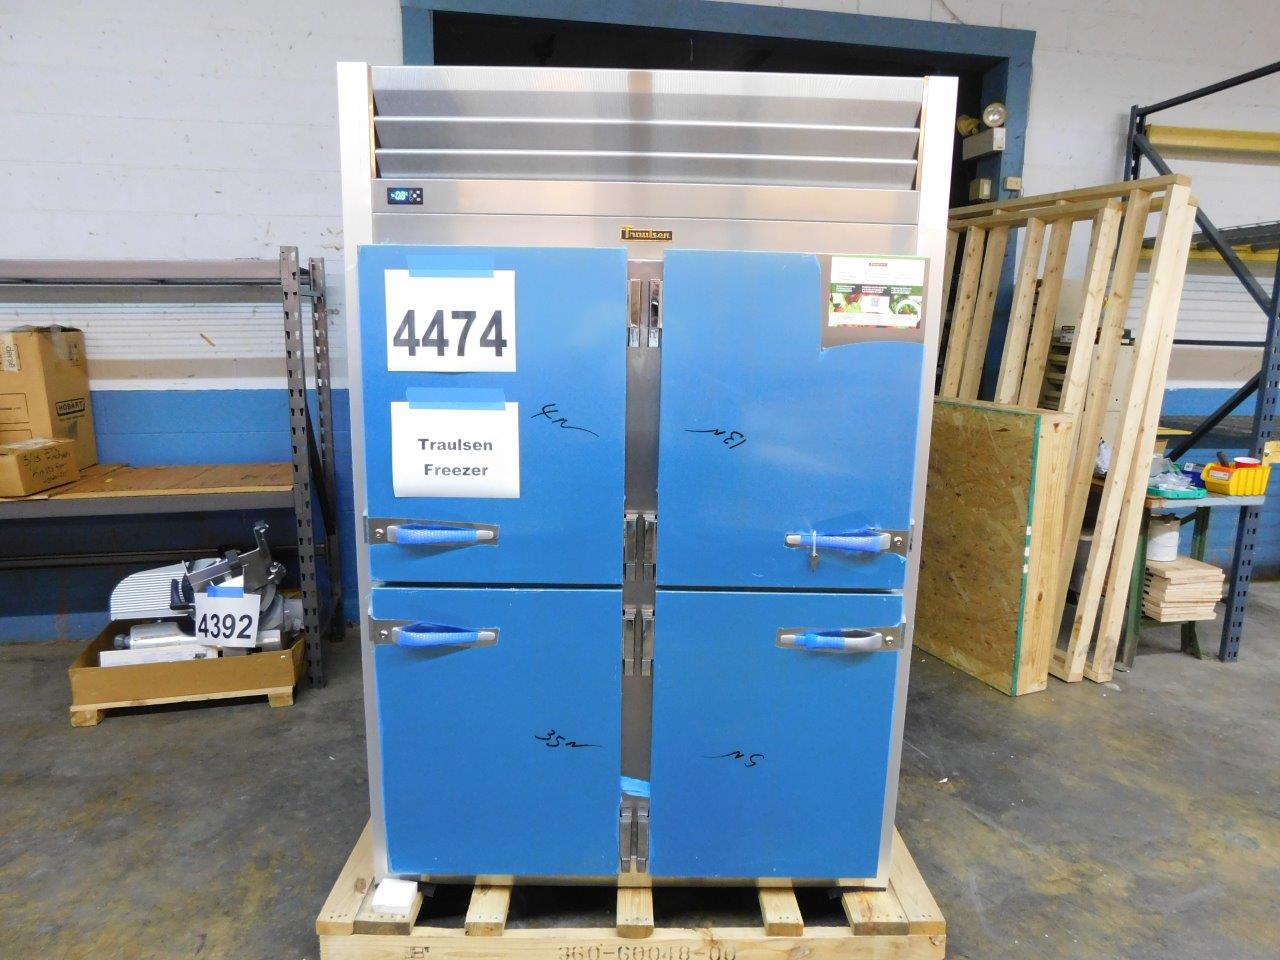 4474 Traulsen 4-door freezer TR2G-22001(3)